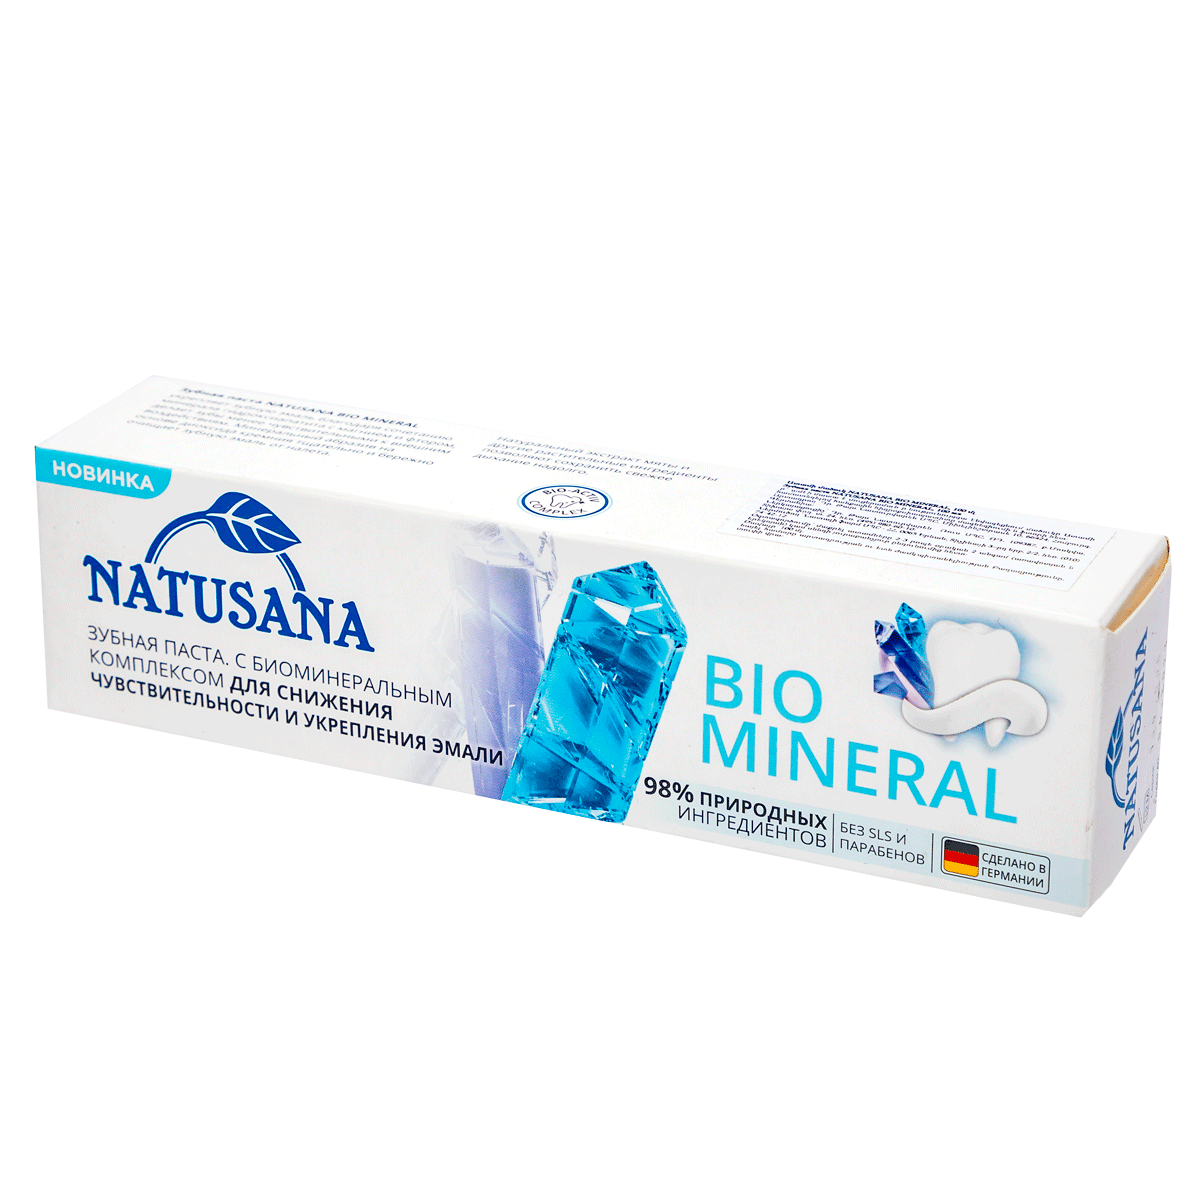 Ատամի մածուկ Natusana Bio Mineral